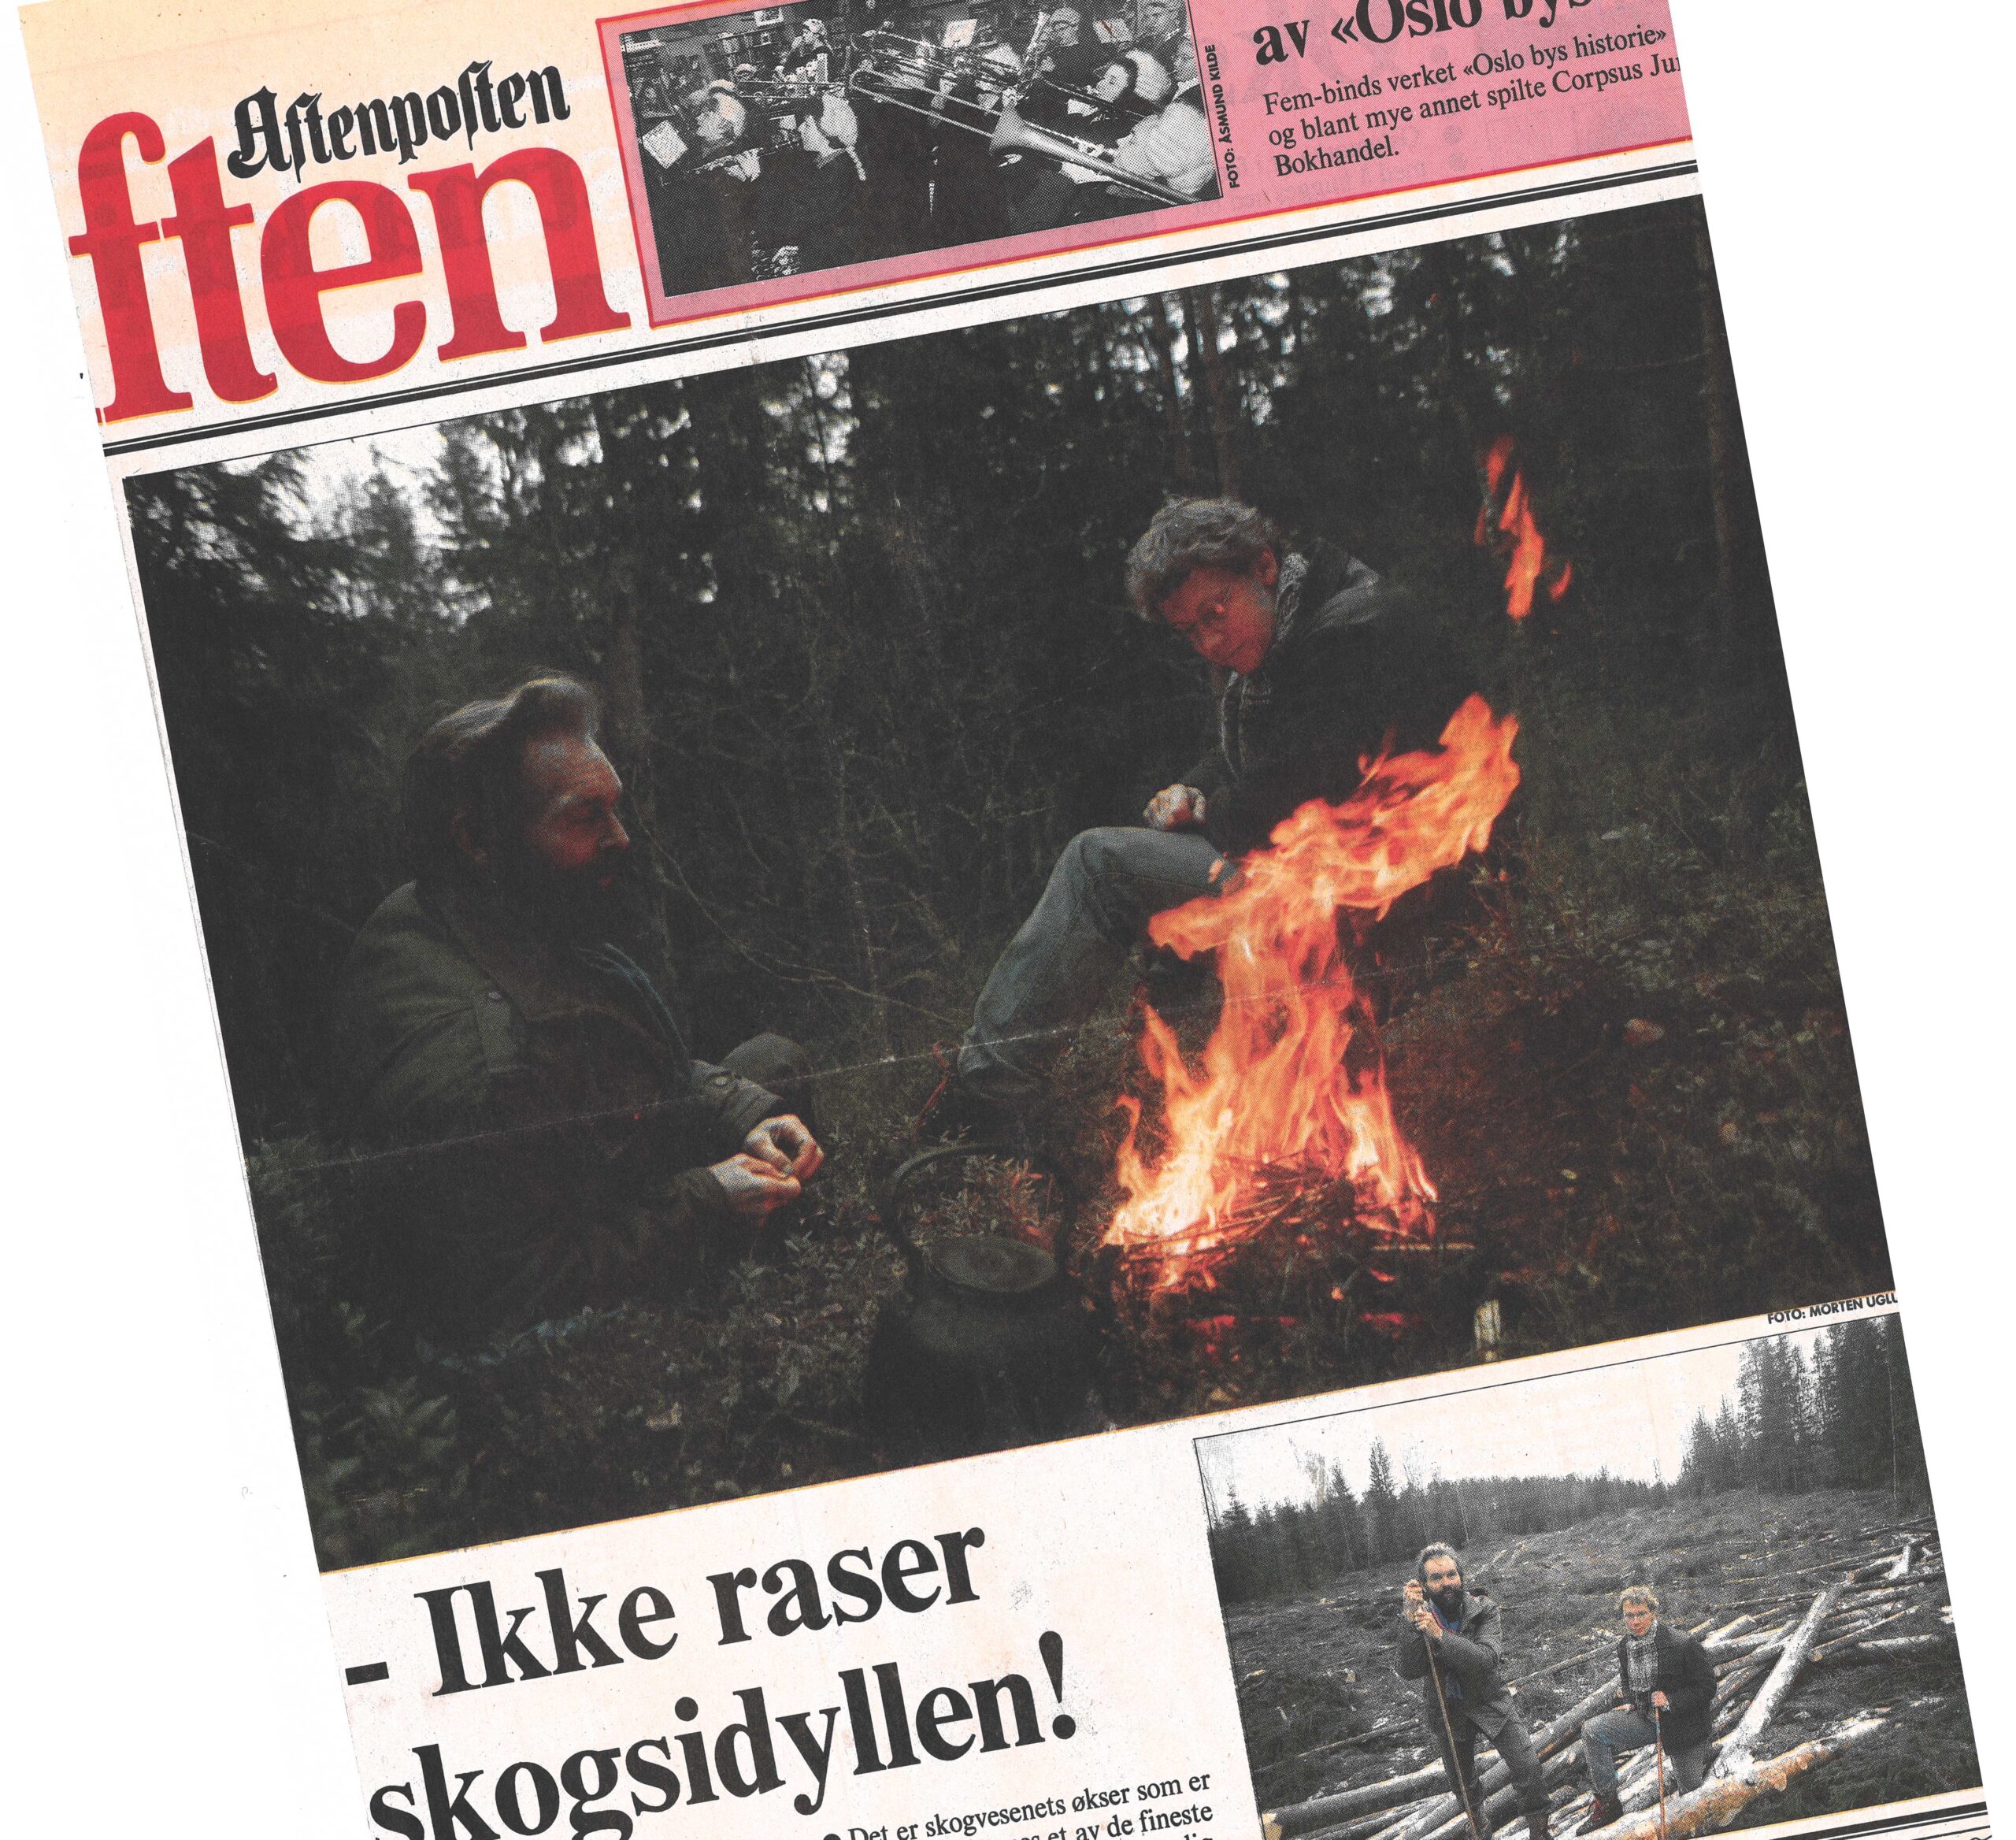 Sverre M. Fjelstad og Gjermund Andersen fikk et stort oppslag i Aftenposten, som bidro til å endre skogbruket i Oslo. Faksimile fra Aftenposten.